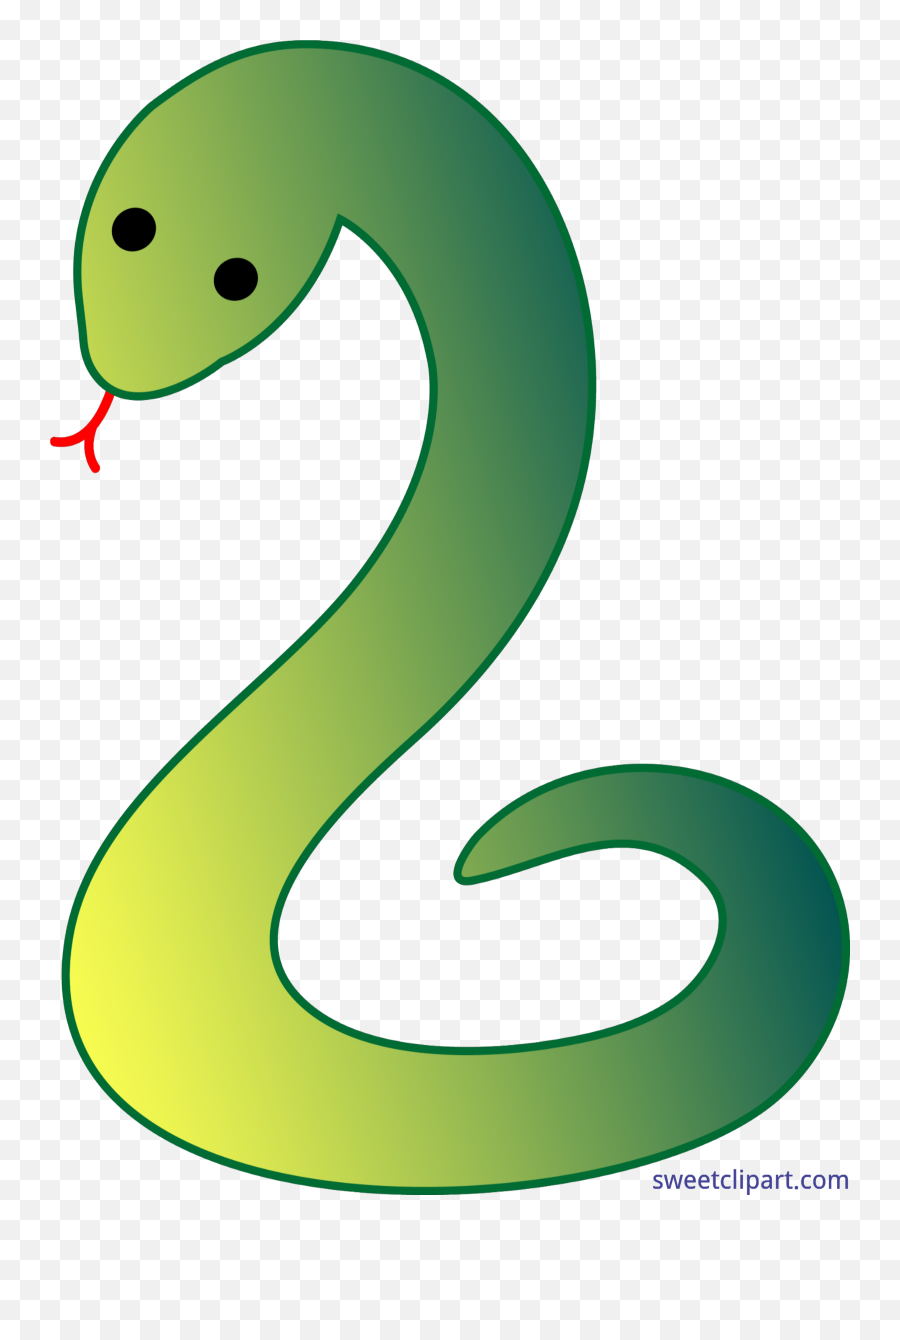 Clipart Snake Green Snake Clipart Snake Green Snake - Simple Snake Clipart Emoji,Snake Emoji